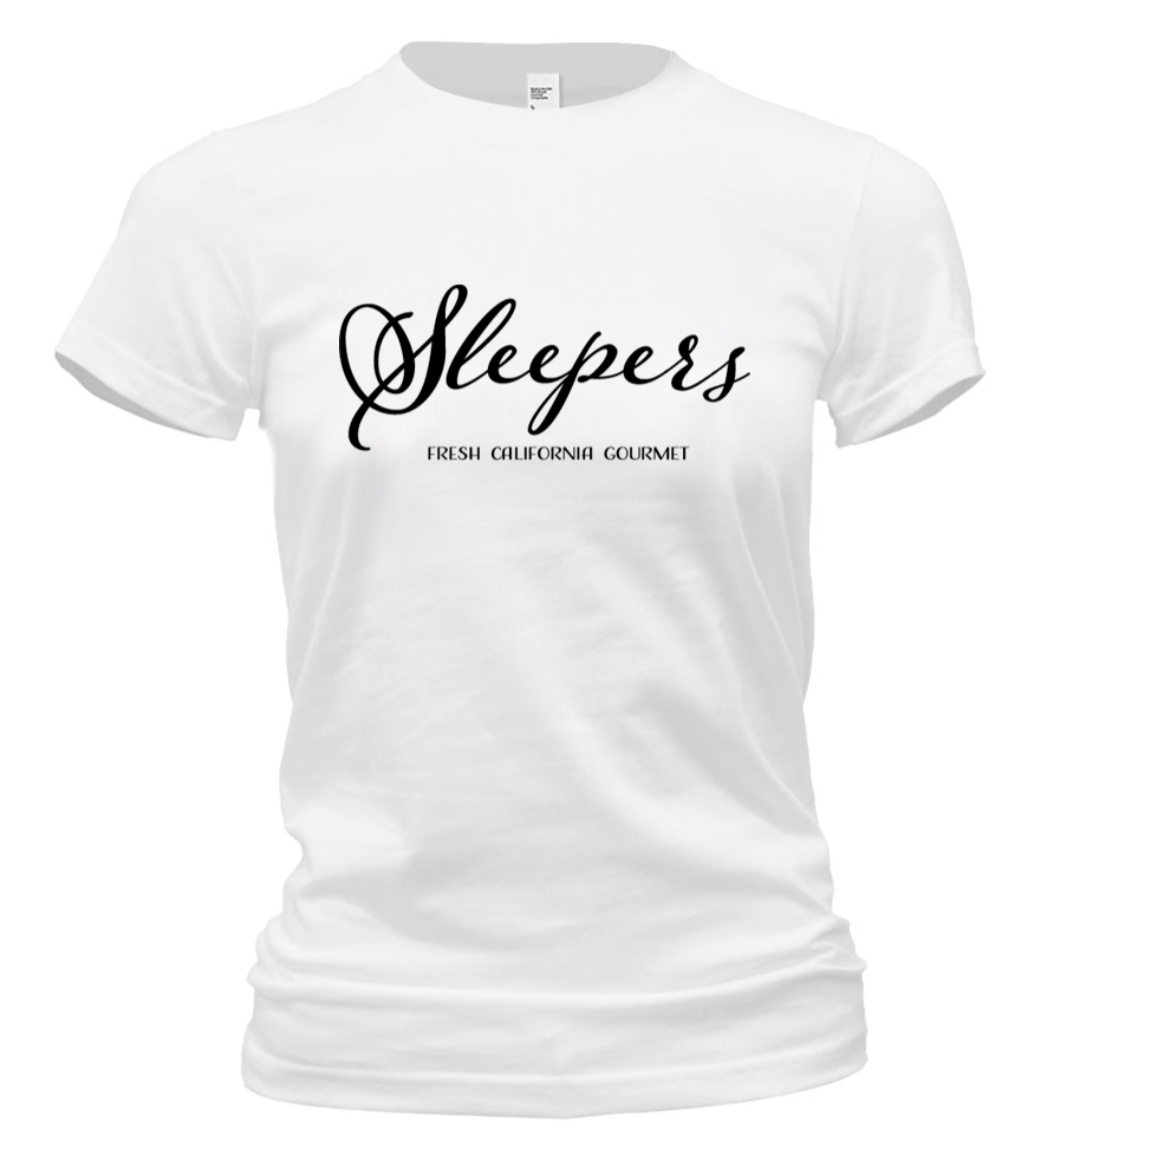 Sleepers - Short Sleeve T-Shirt